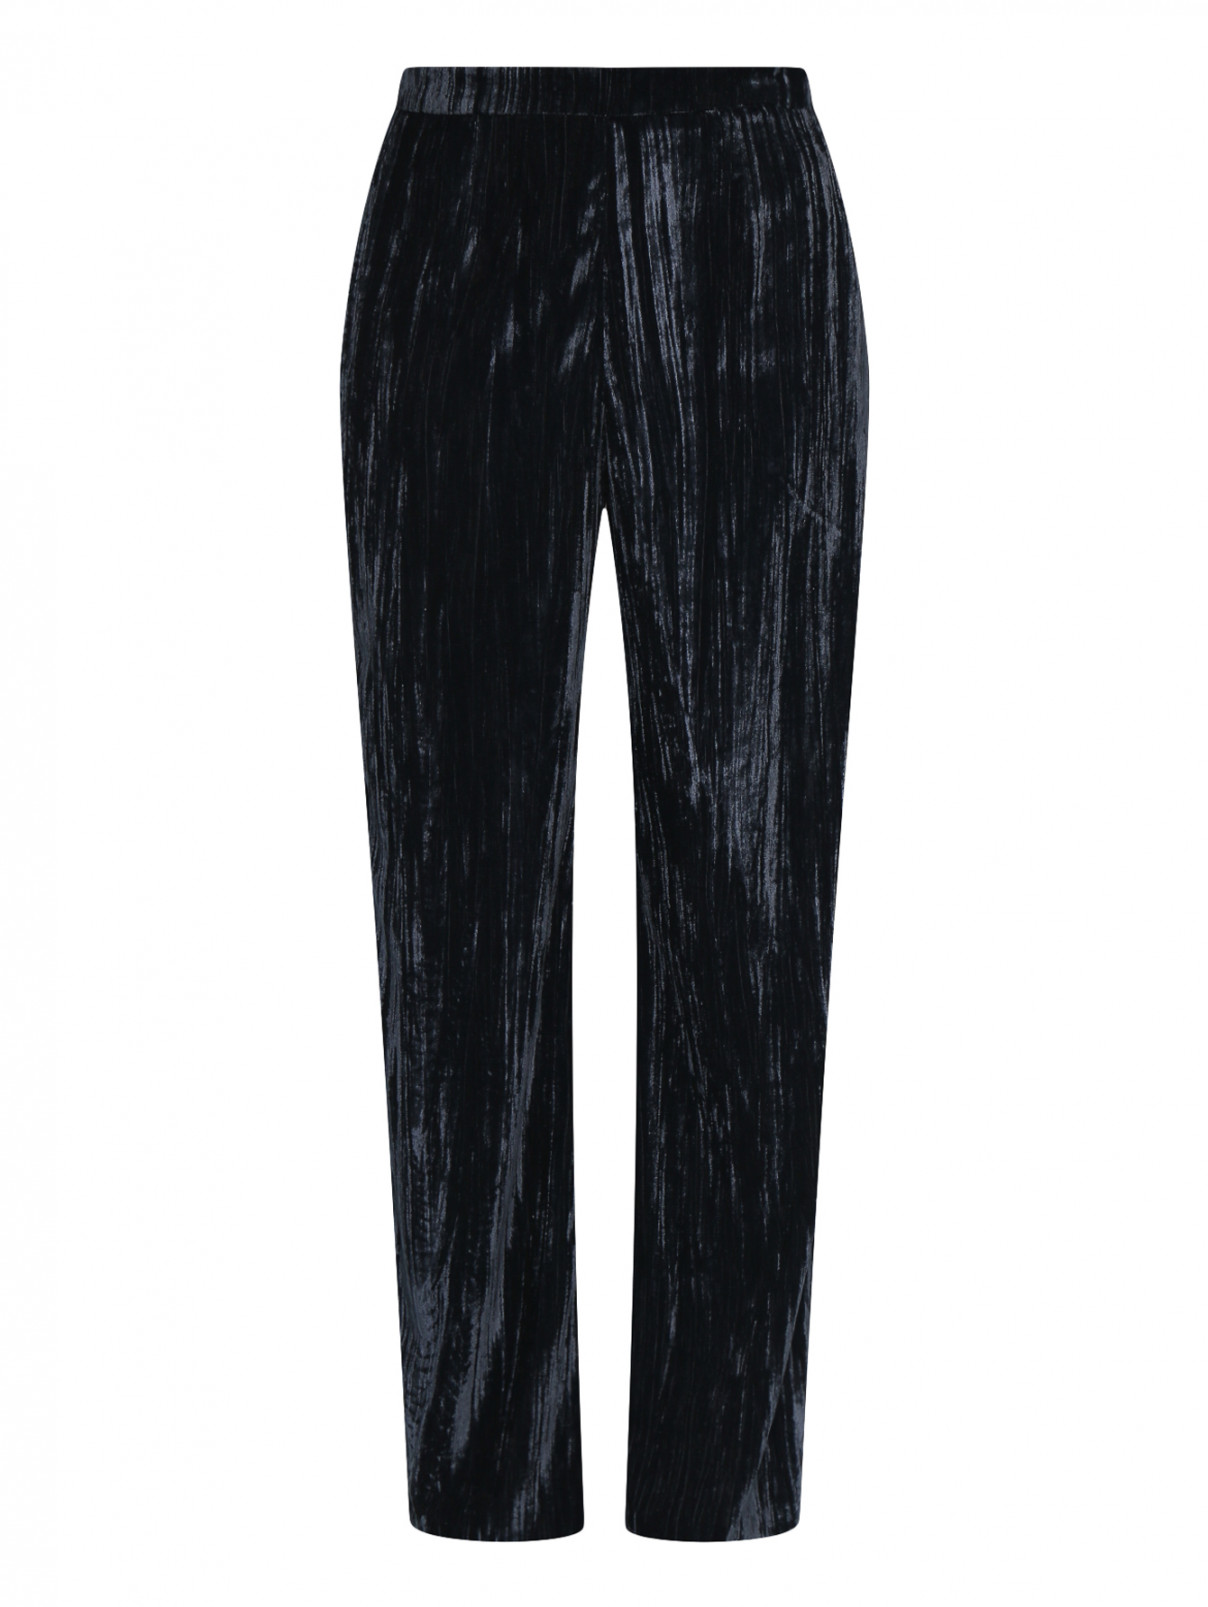 Бархатные брюки на резинке свободного кроя Max&Co  –  Общий вид  – Цвет:  Синий